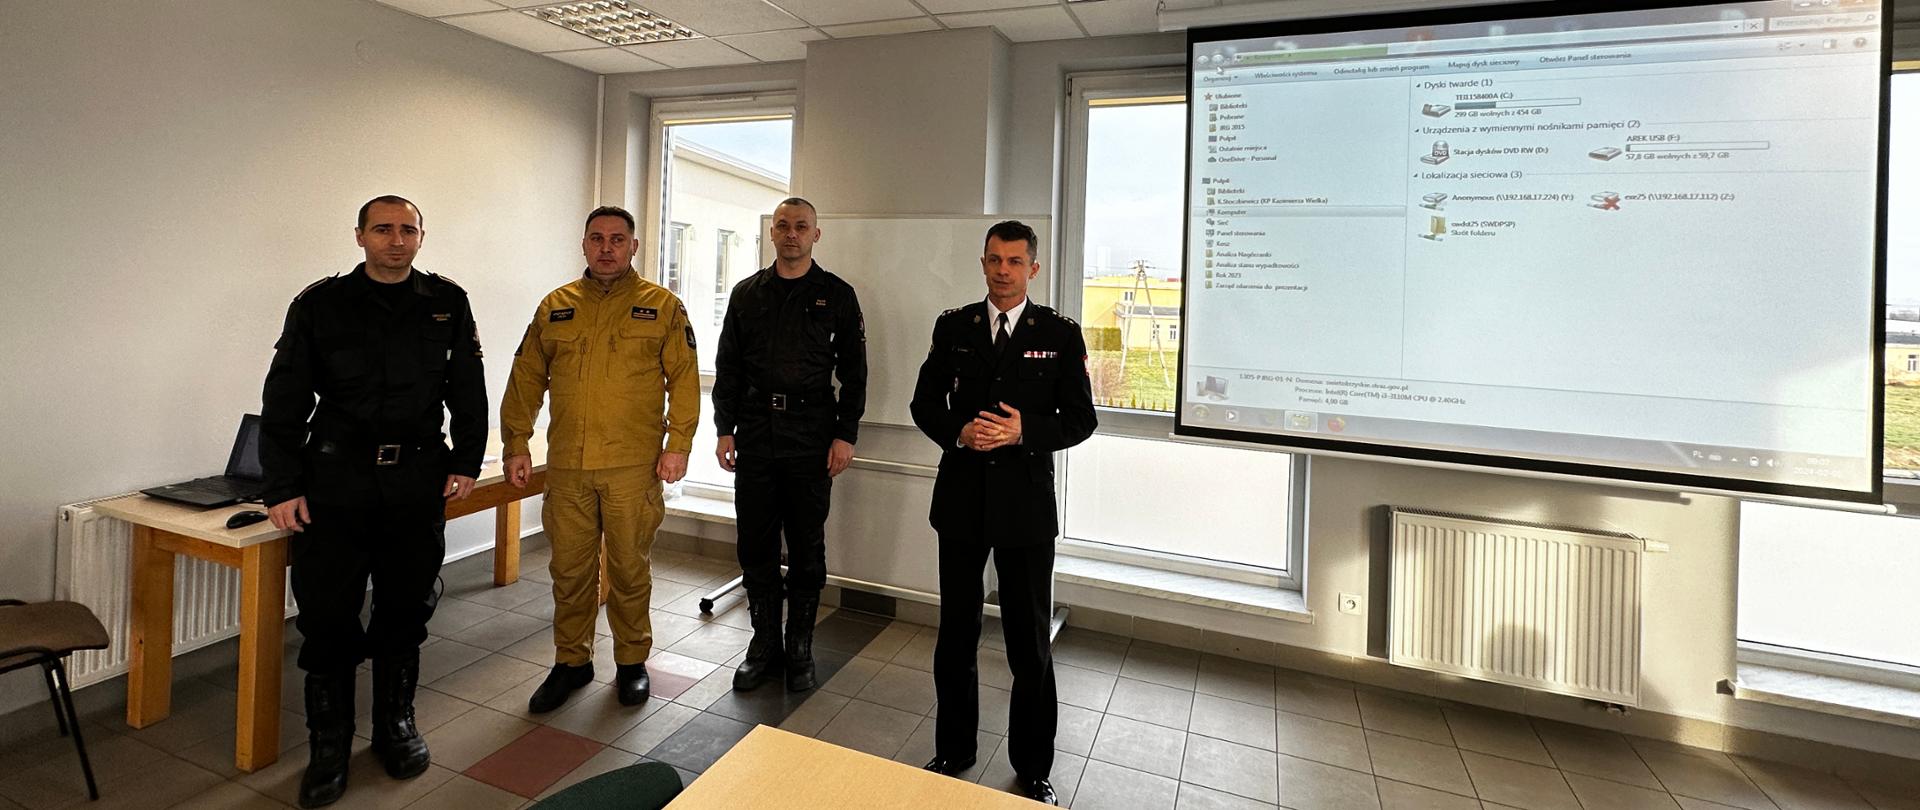 Szkolenie podstawowe strażaków ratowników OSP rozpoczęte